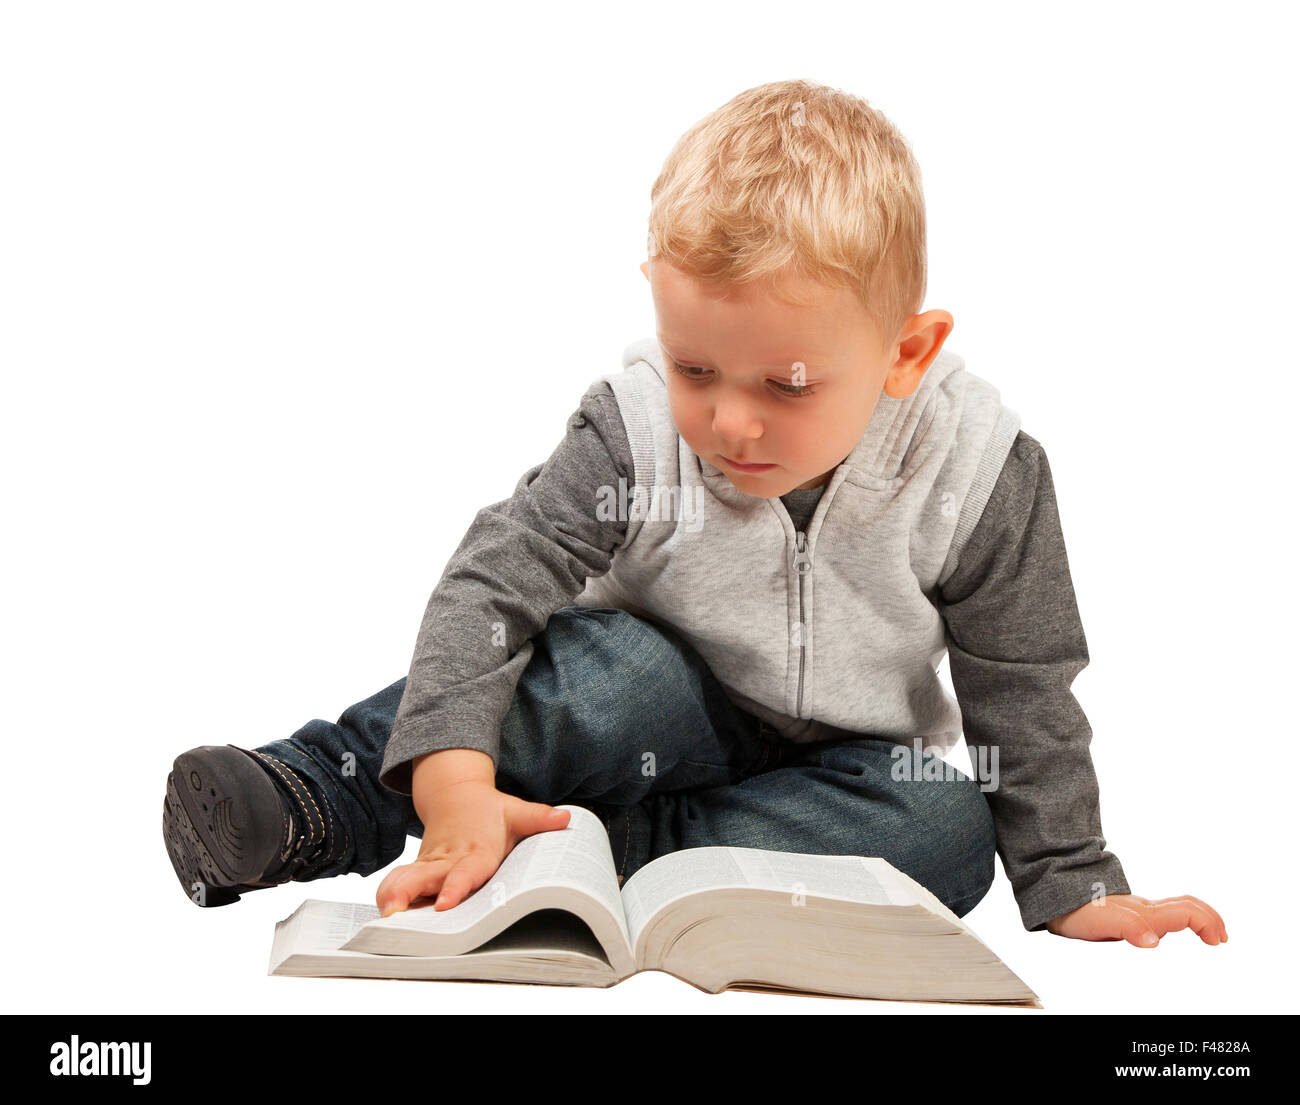 kleines Kind versuchen, ein Buch zu lesen Stockfoto